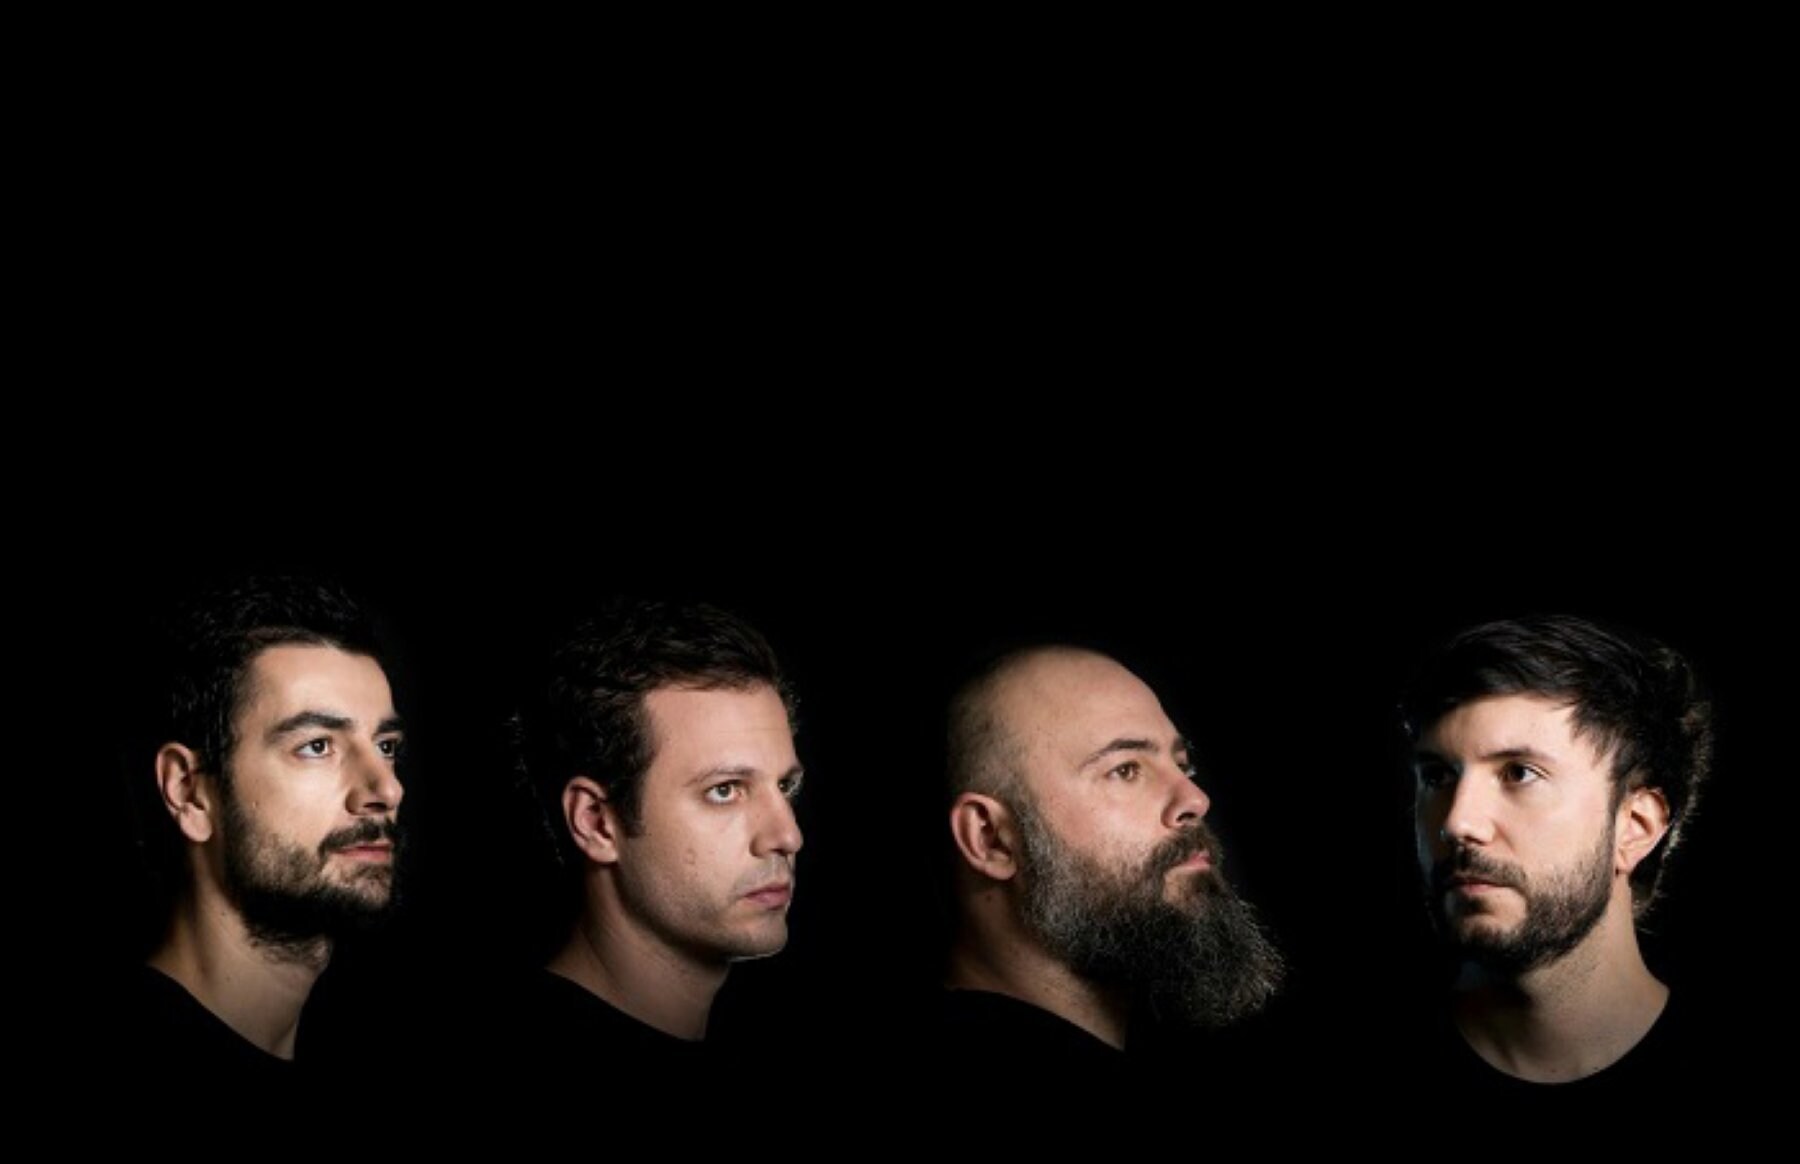 La banda de rock instrumental Toundra participará en 'Camera obscura'. / C7